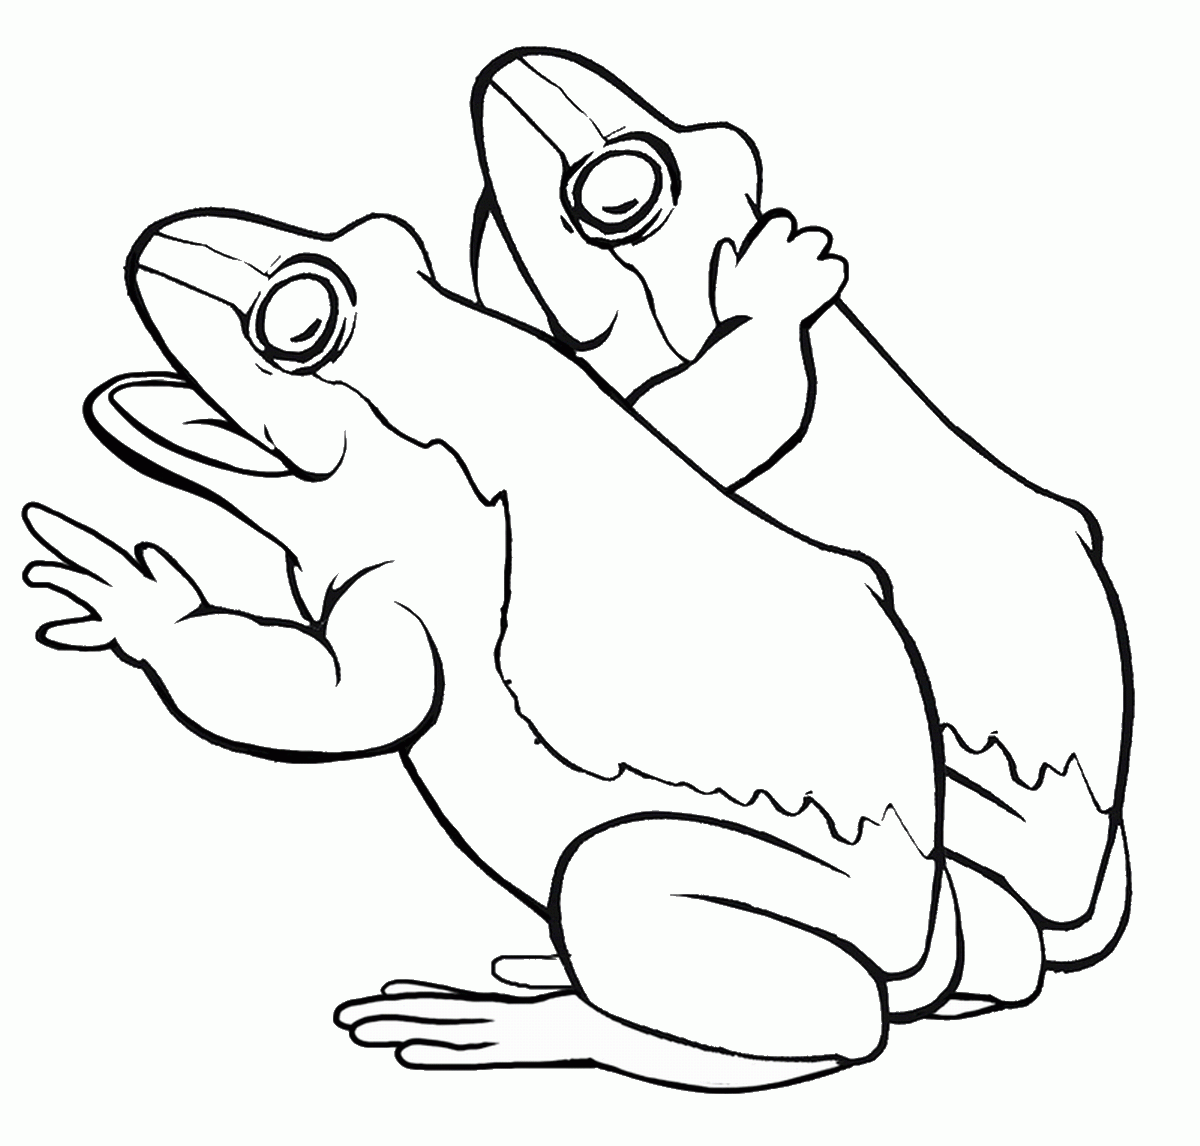 46-cute-baby-frog-coloring-pages-gif-mencari-mainan